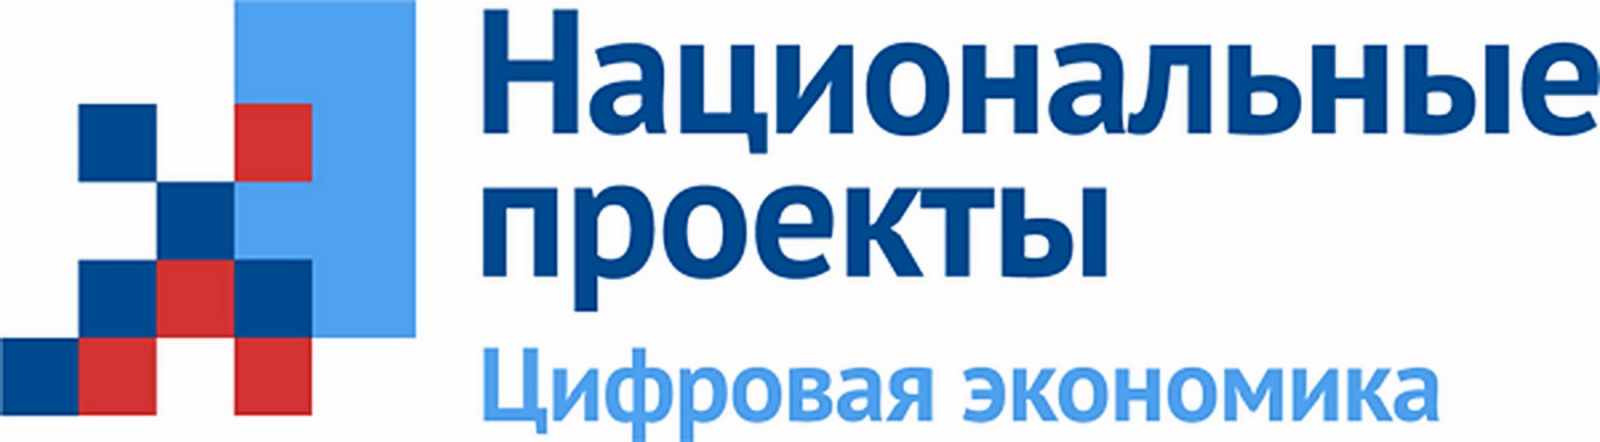 В Башкортостане еще девять массовых социально значимых услуг переведены в электронный формат